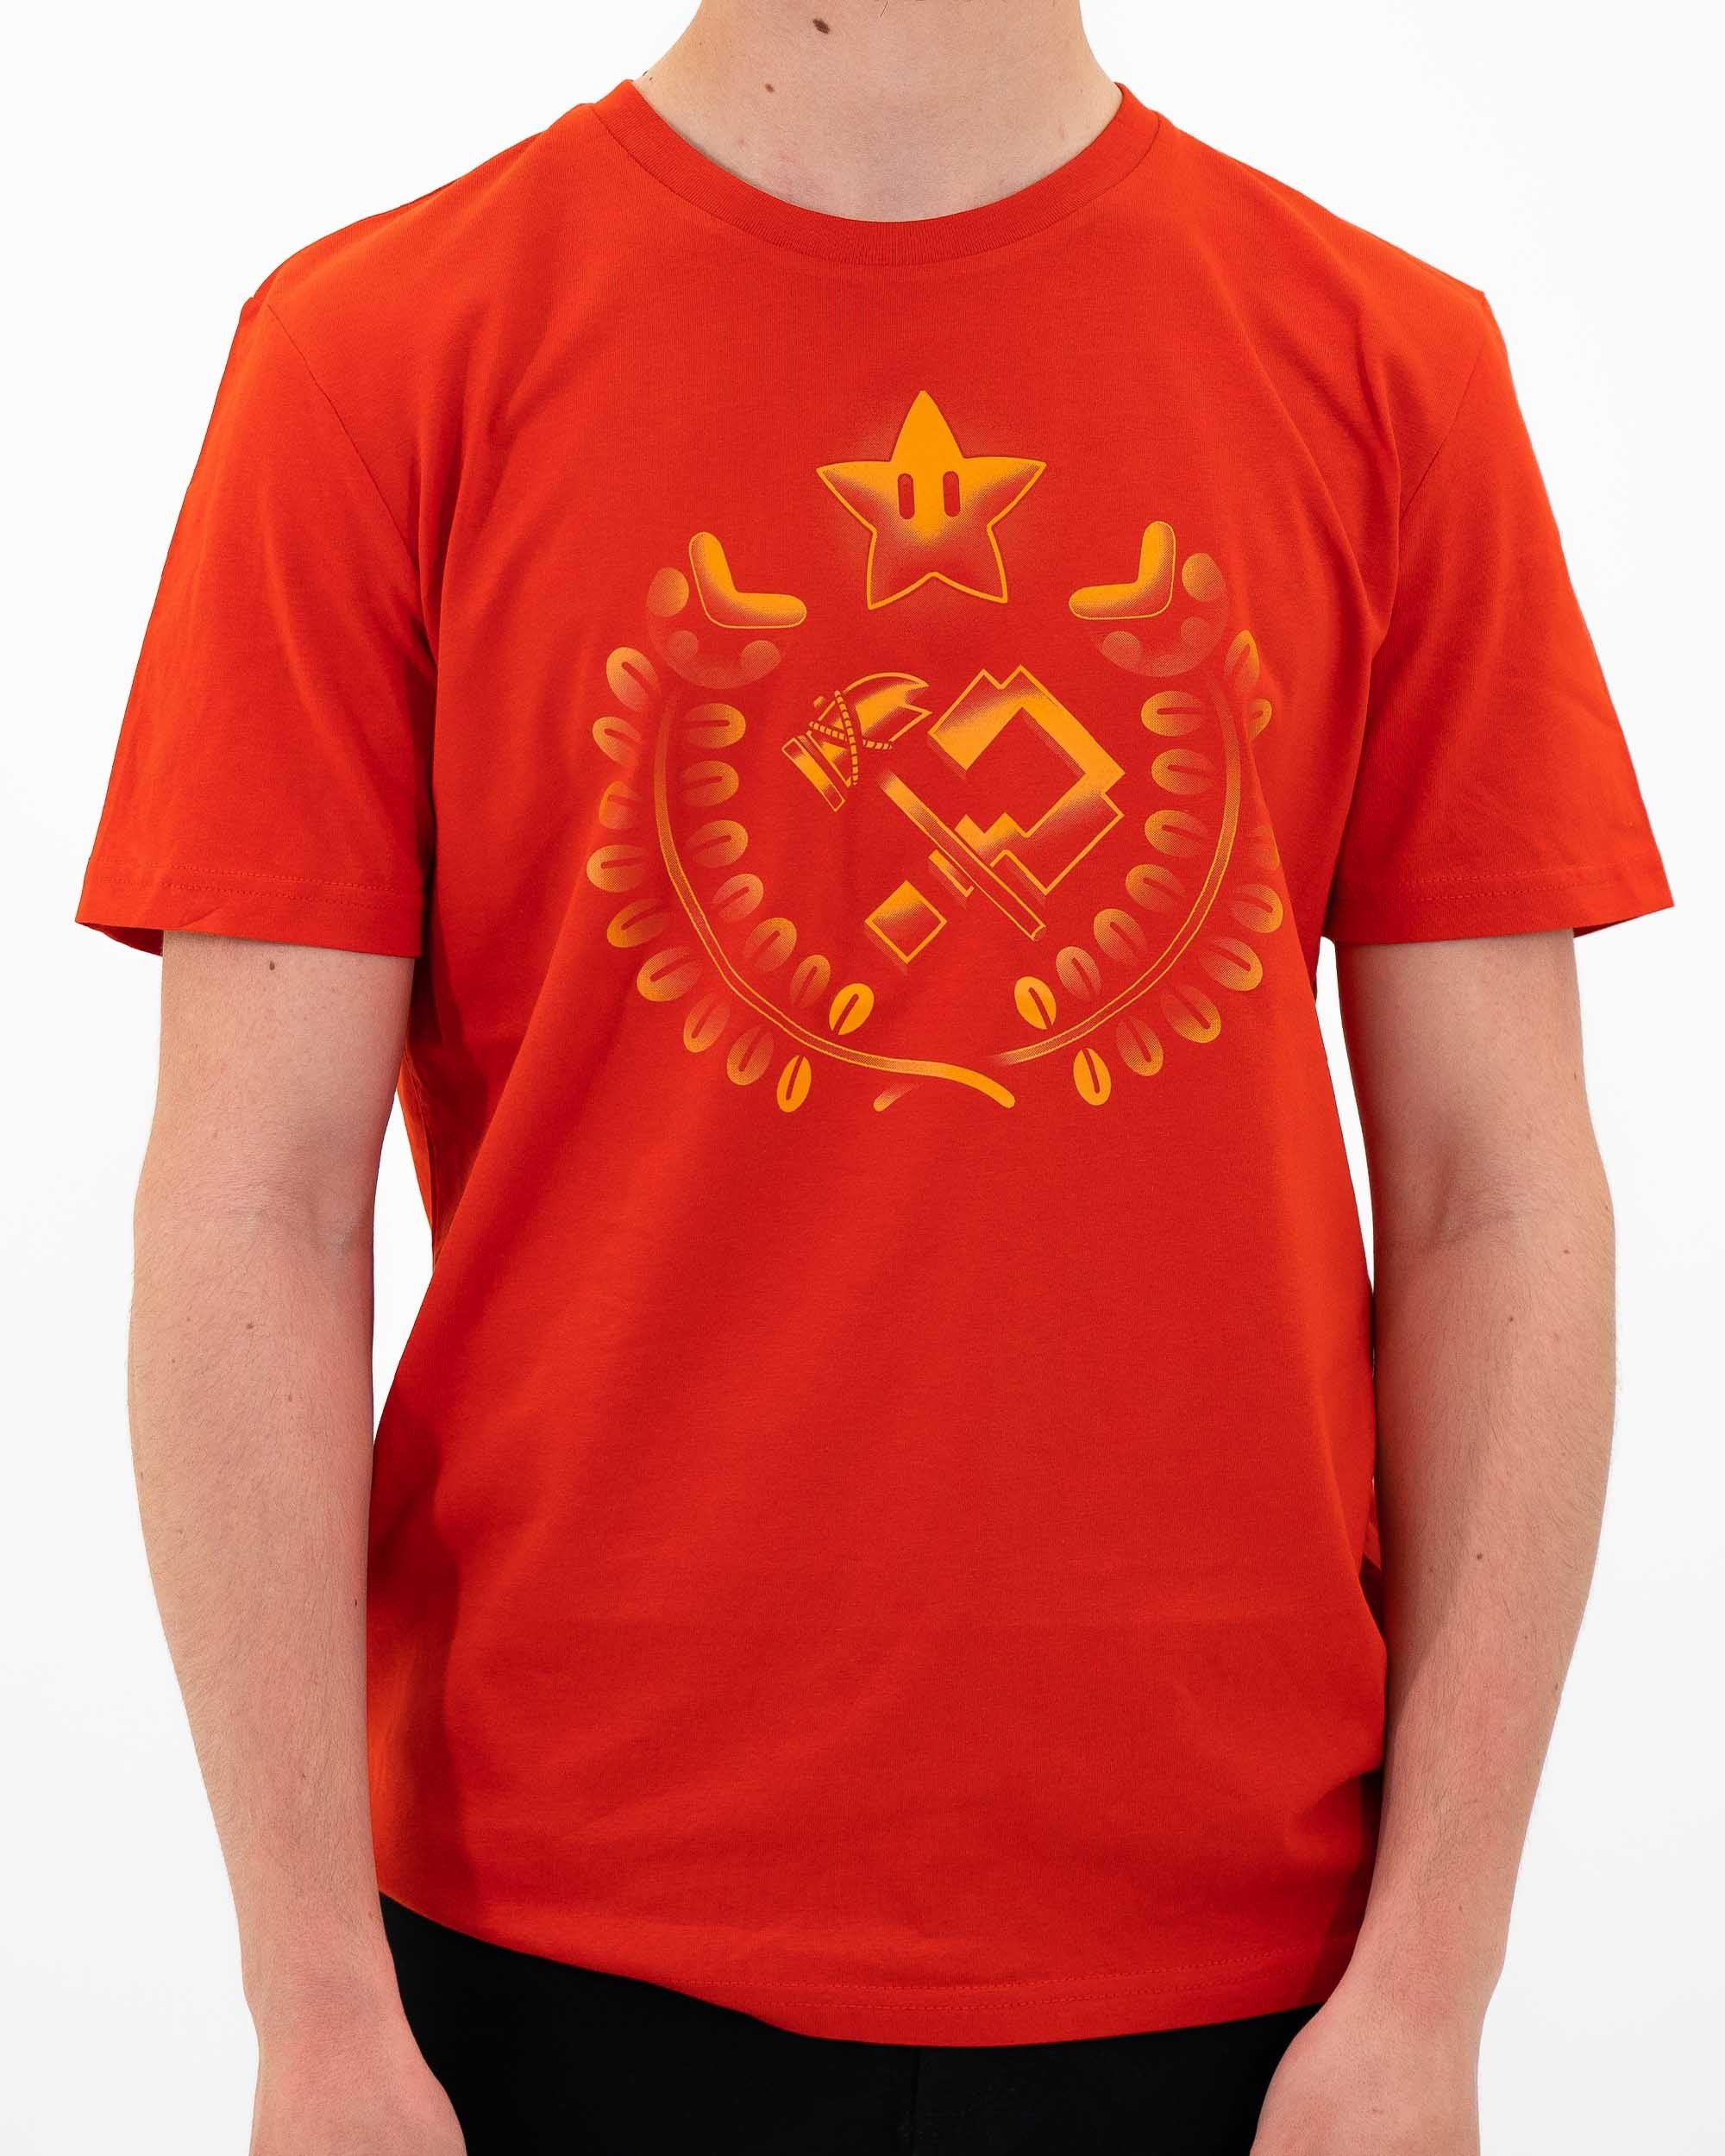 T-shirt Hammer & Question Mark de couleur Rouge par Ilustrata